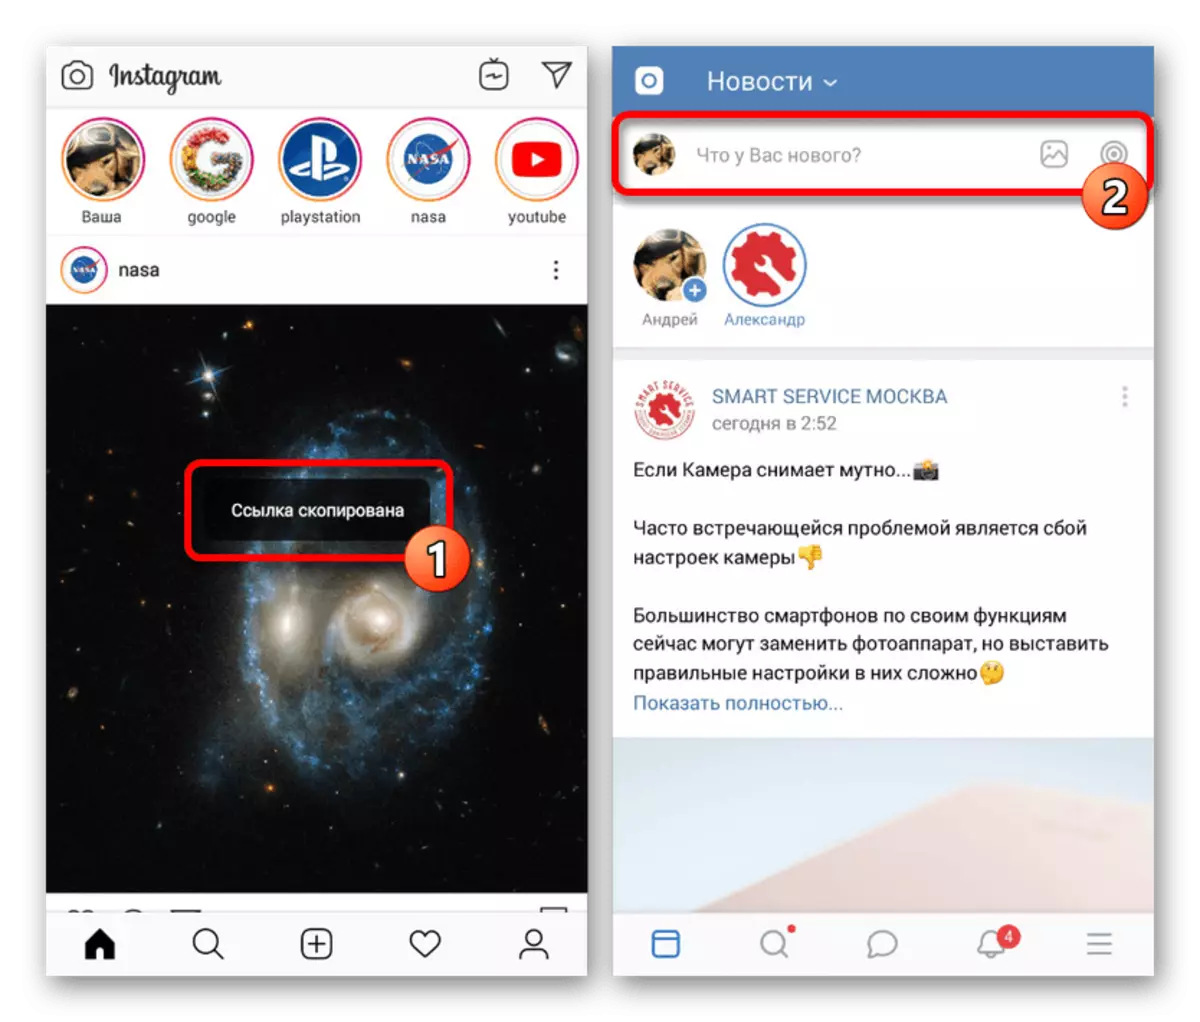 ဖုန်းအပေါ် VKontakte application သို့ကူးပြောင်းခြင်း